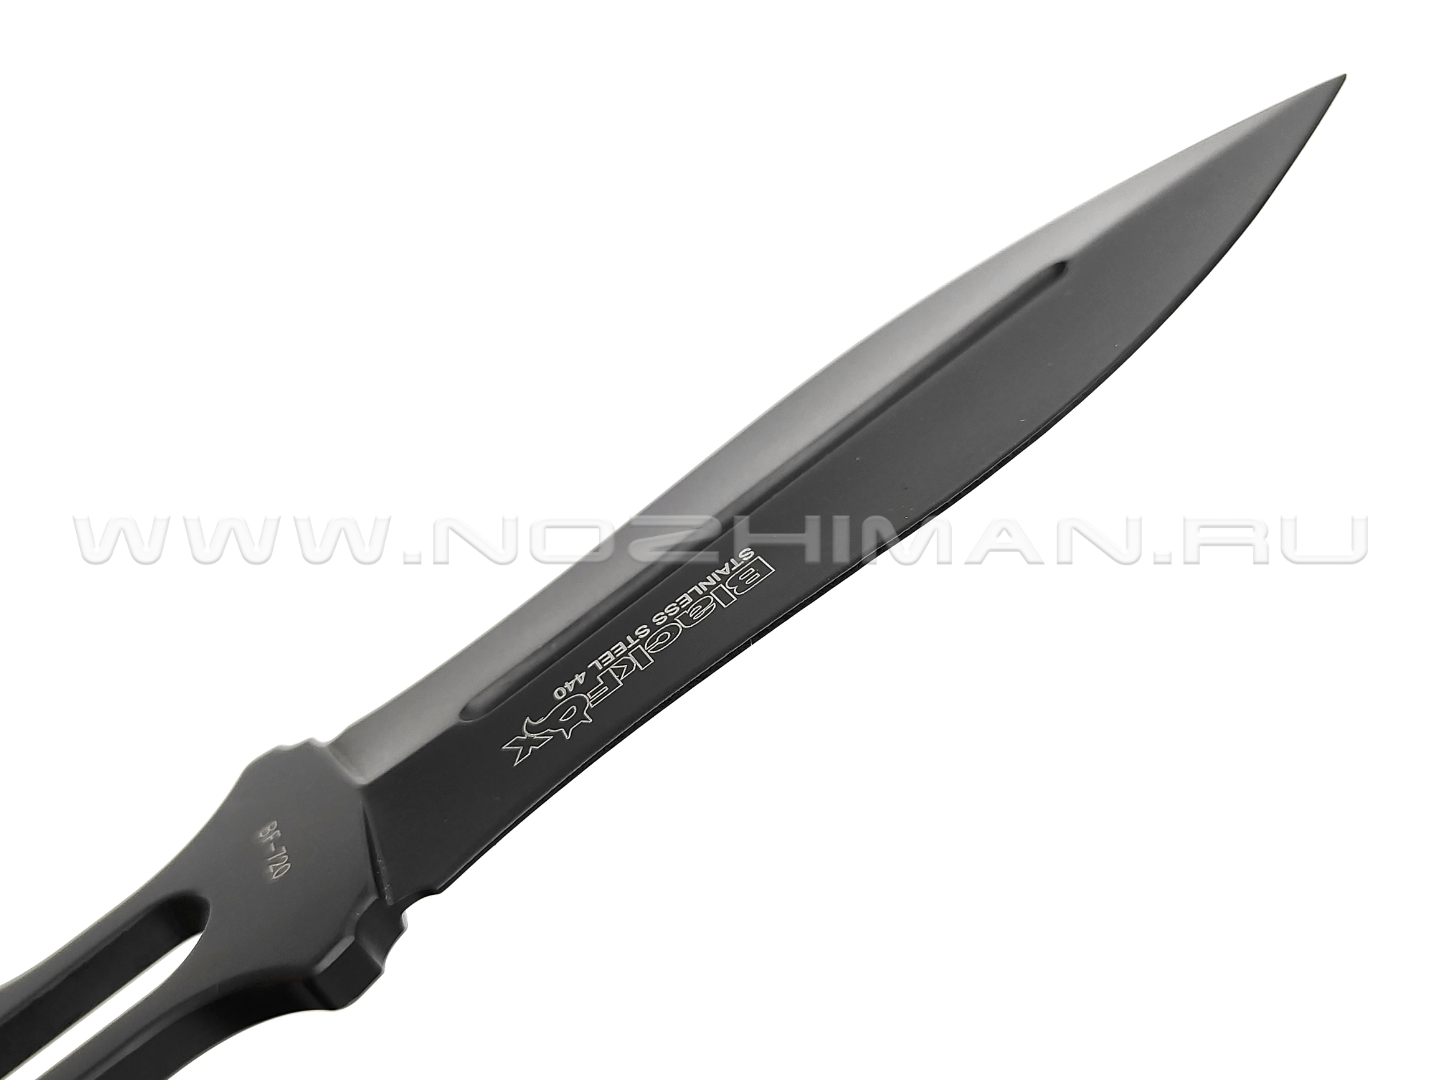 Нож BlackFox BF-720 сталь 440, рукоять Steel